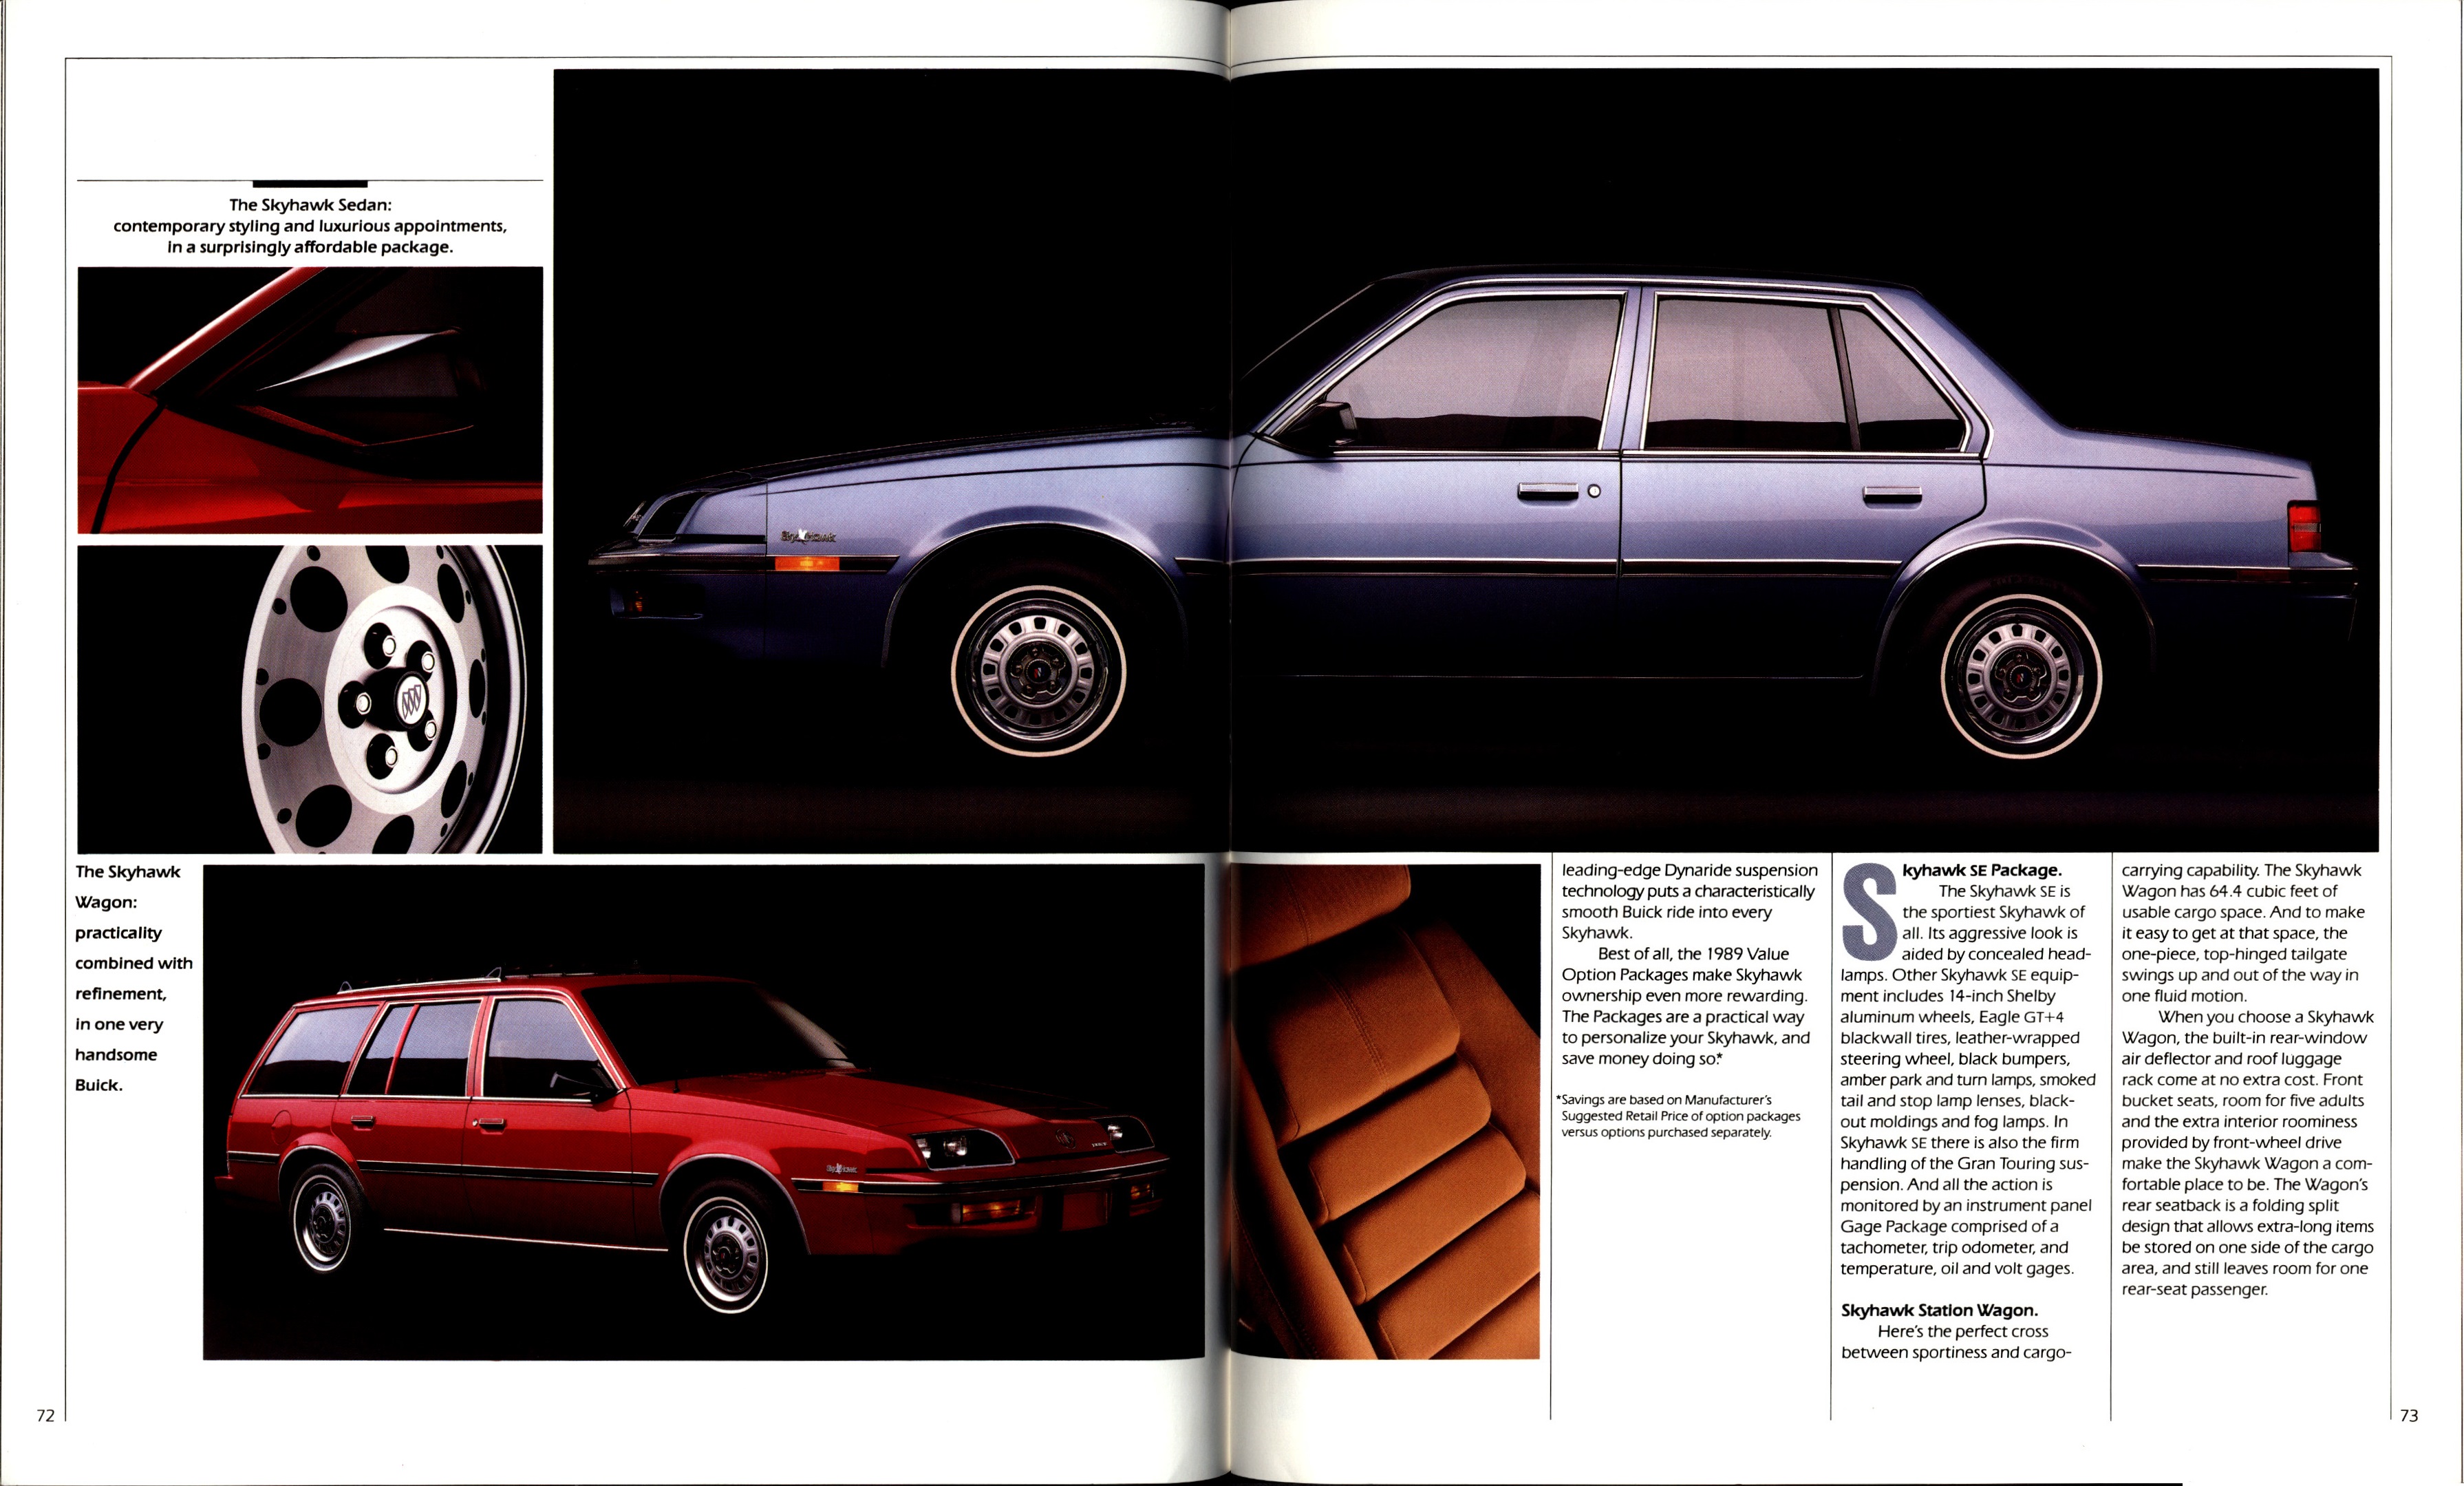 1989 Buick Full Line Prestige-72-73